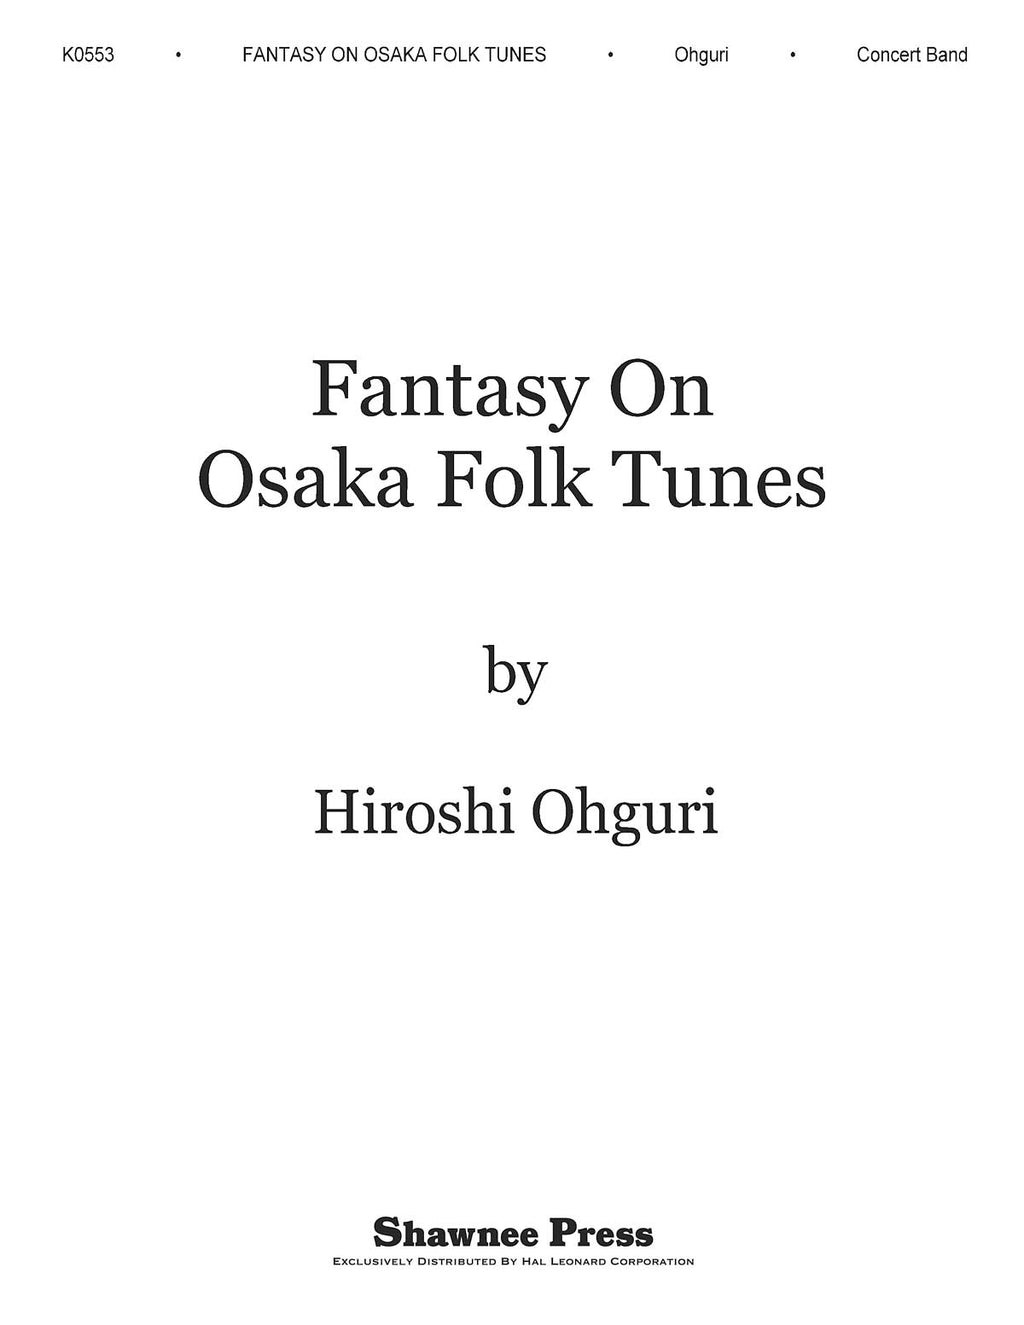 吹奏楽譜》大阪俗謡による幻想曲(オンデマンド出版)(Fantasy on Osaka